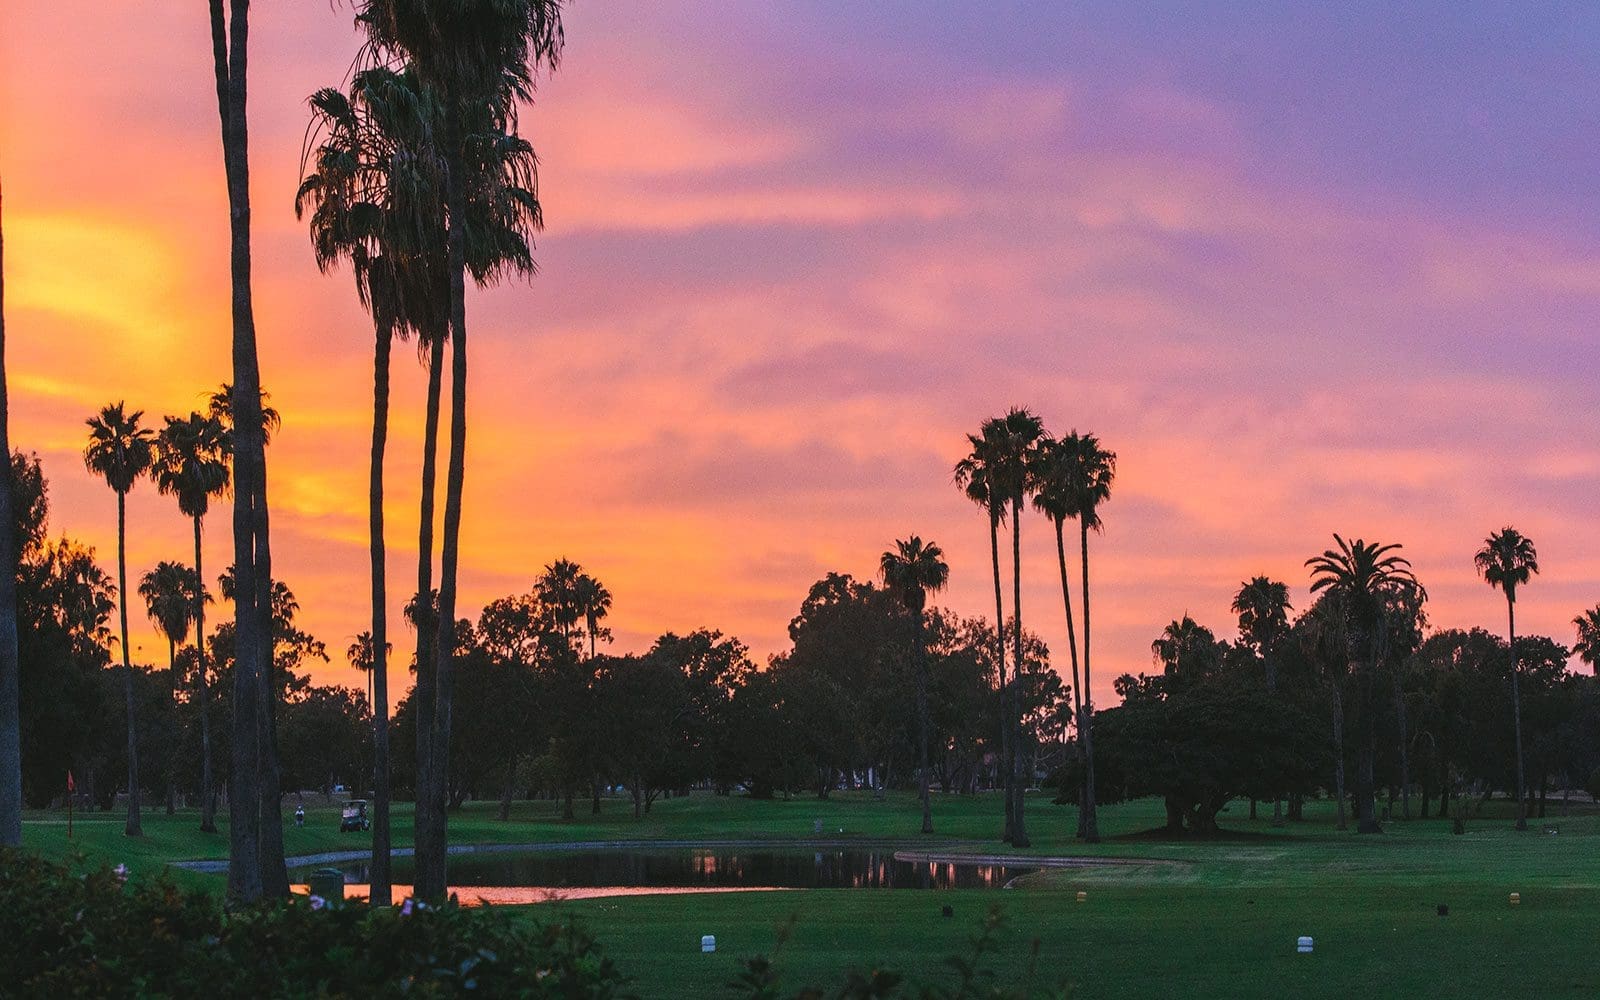 Coronado Golf Course at sunset